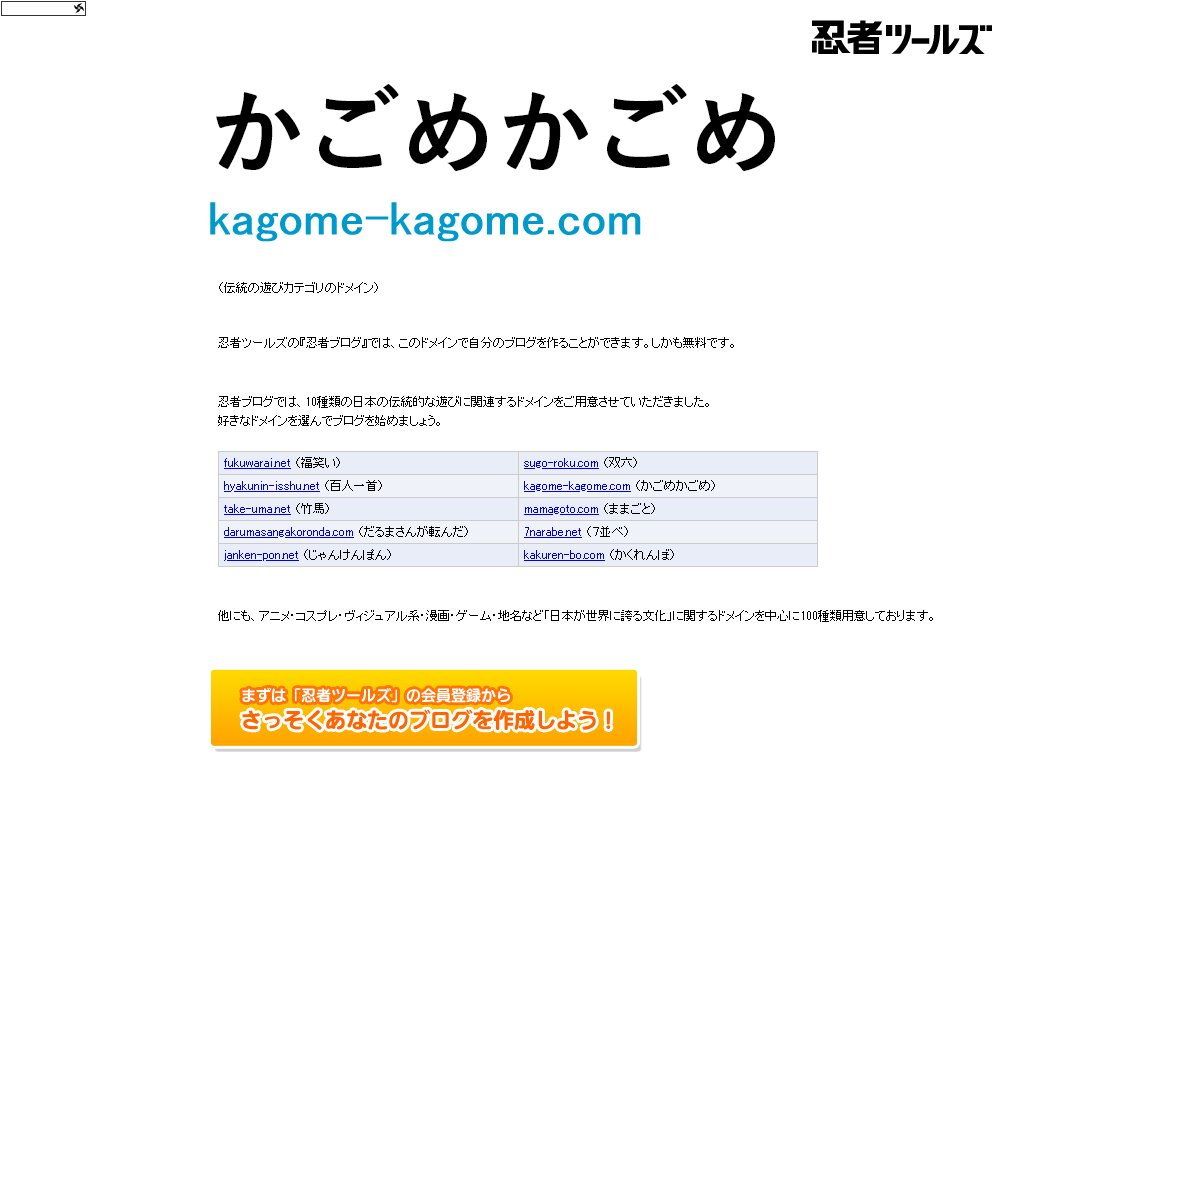 A complete backup of kagome-kagome.com